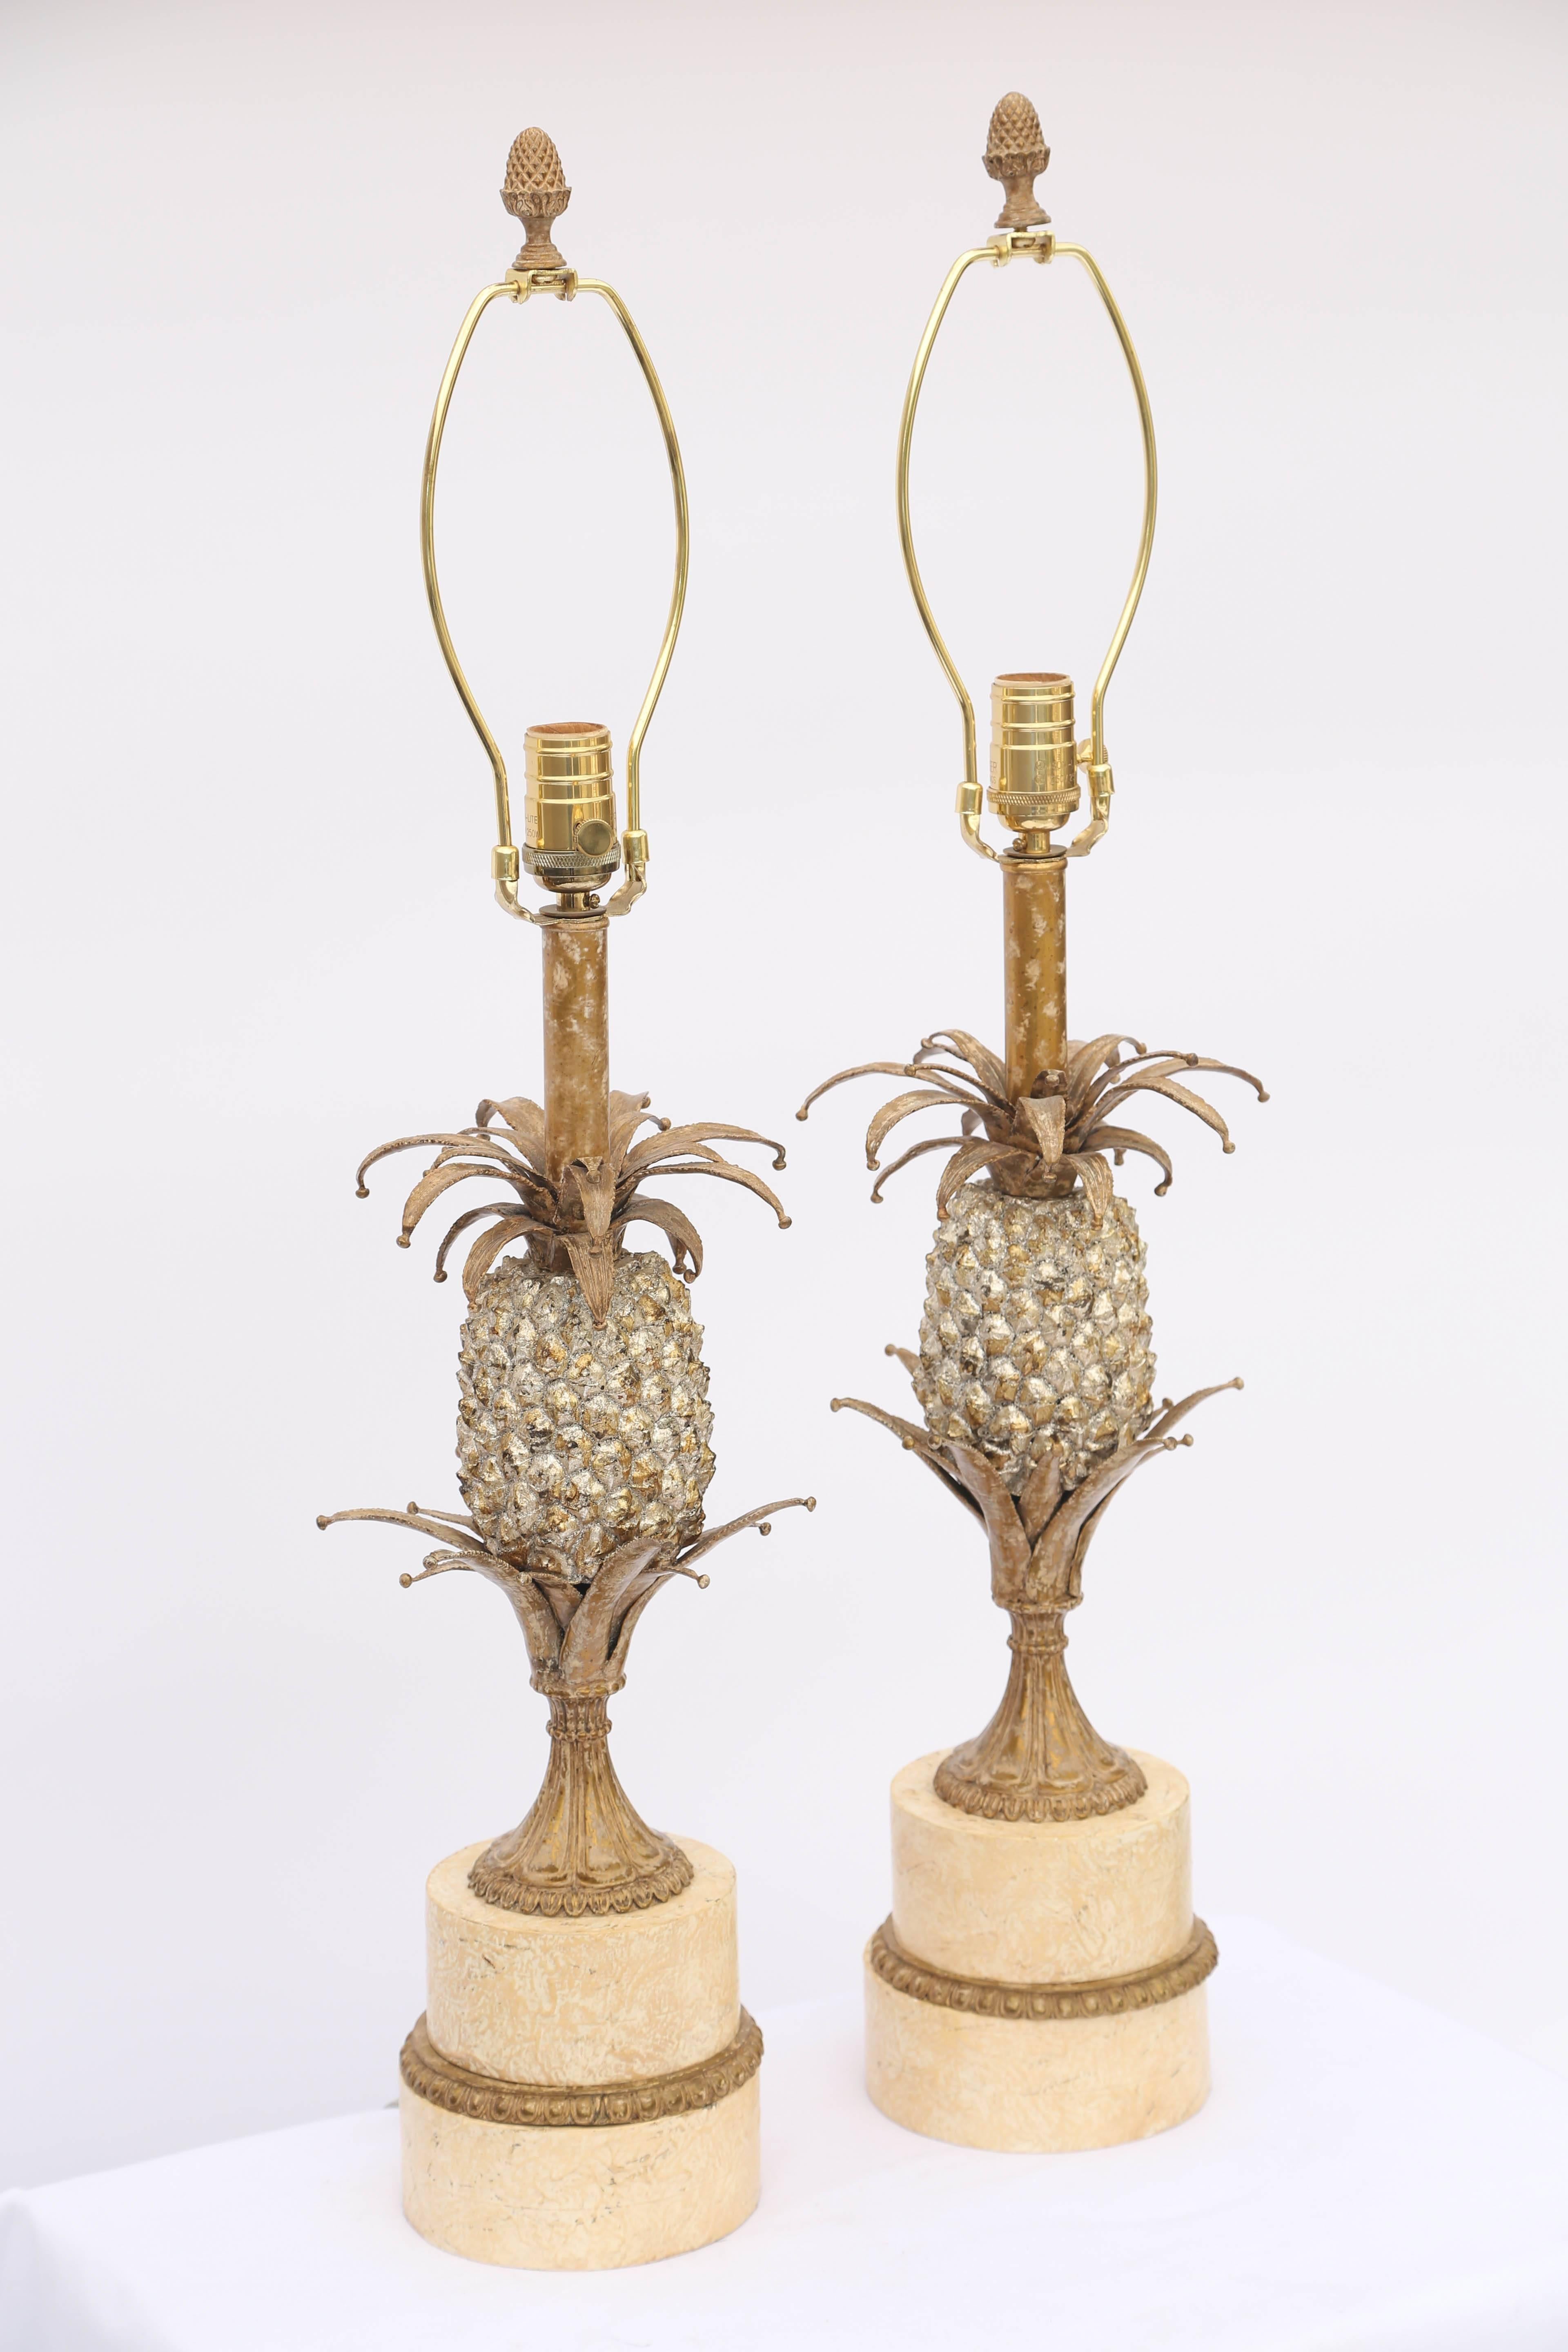 Paire de lampes, chacune en forme d'ananas, en métal argenté et doré, reposant sur un socle rond et gradué.

Numéro d'inventaire : 7856.